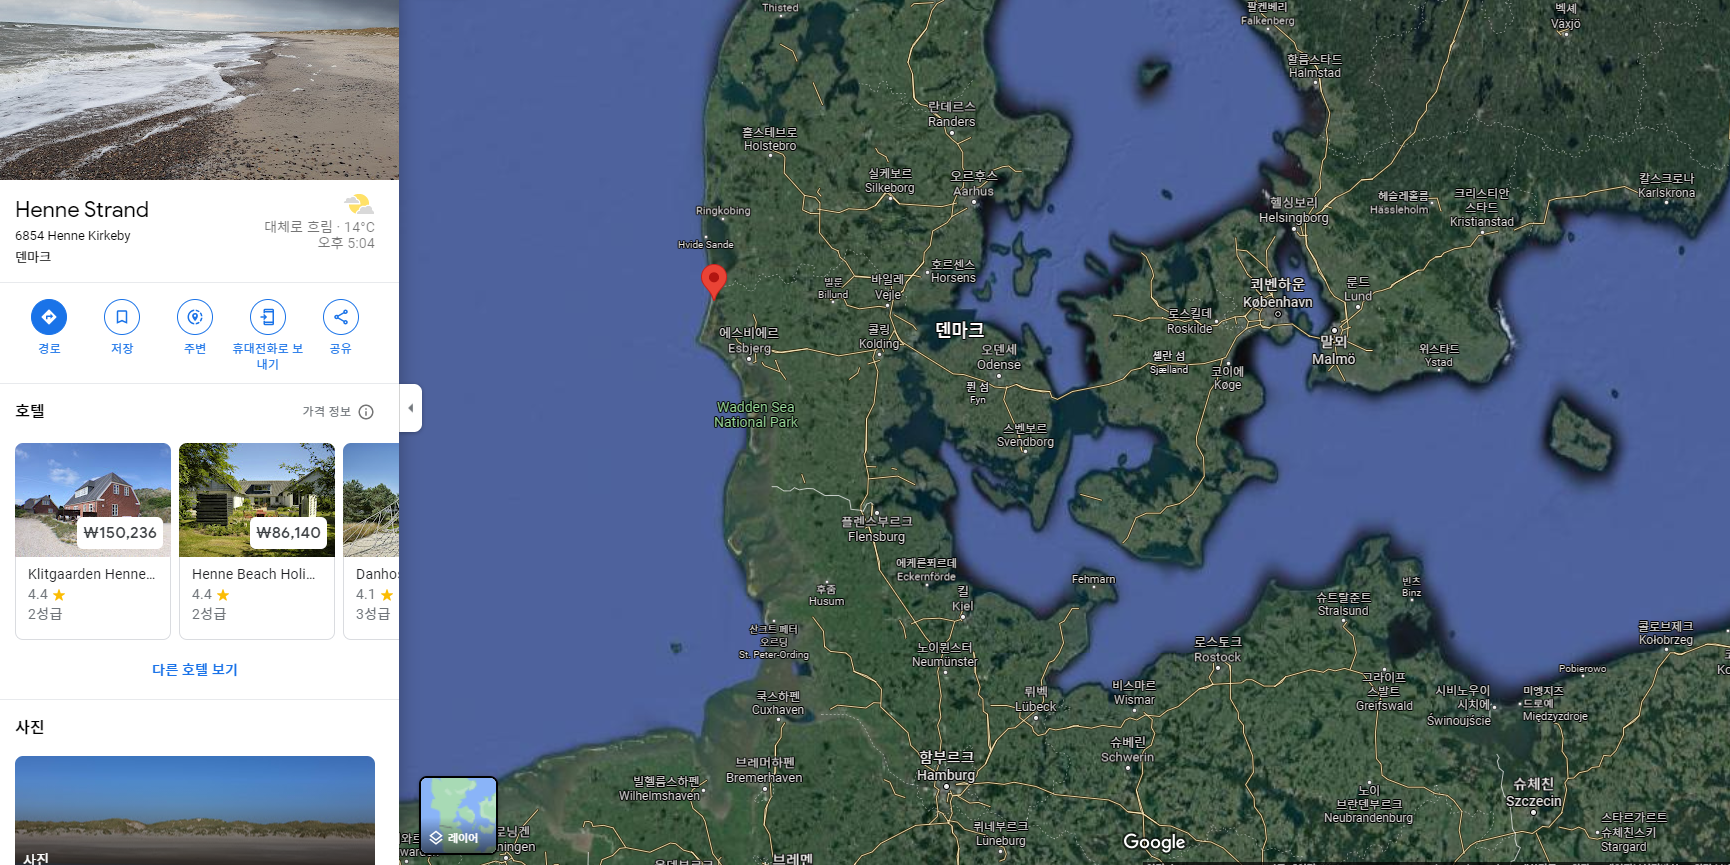 덴마크-헤네스트랜드-구글어스-위치-사진